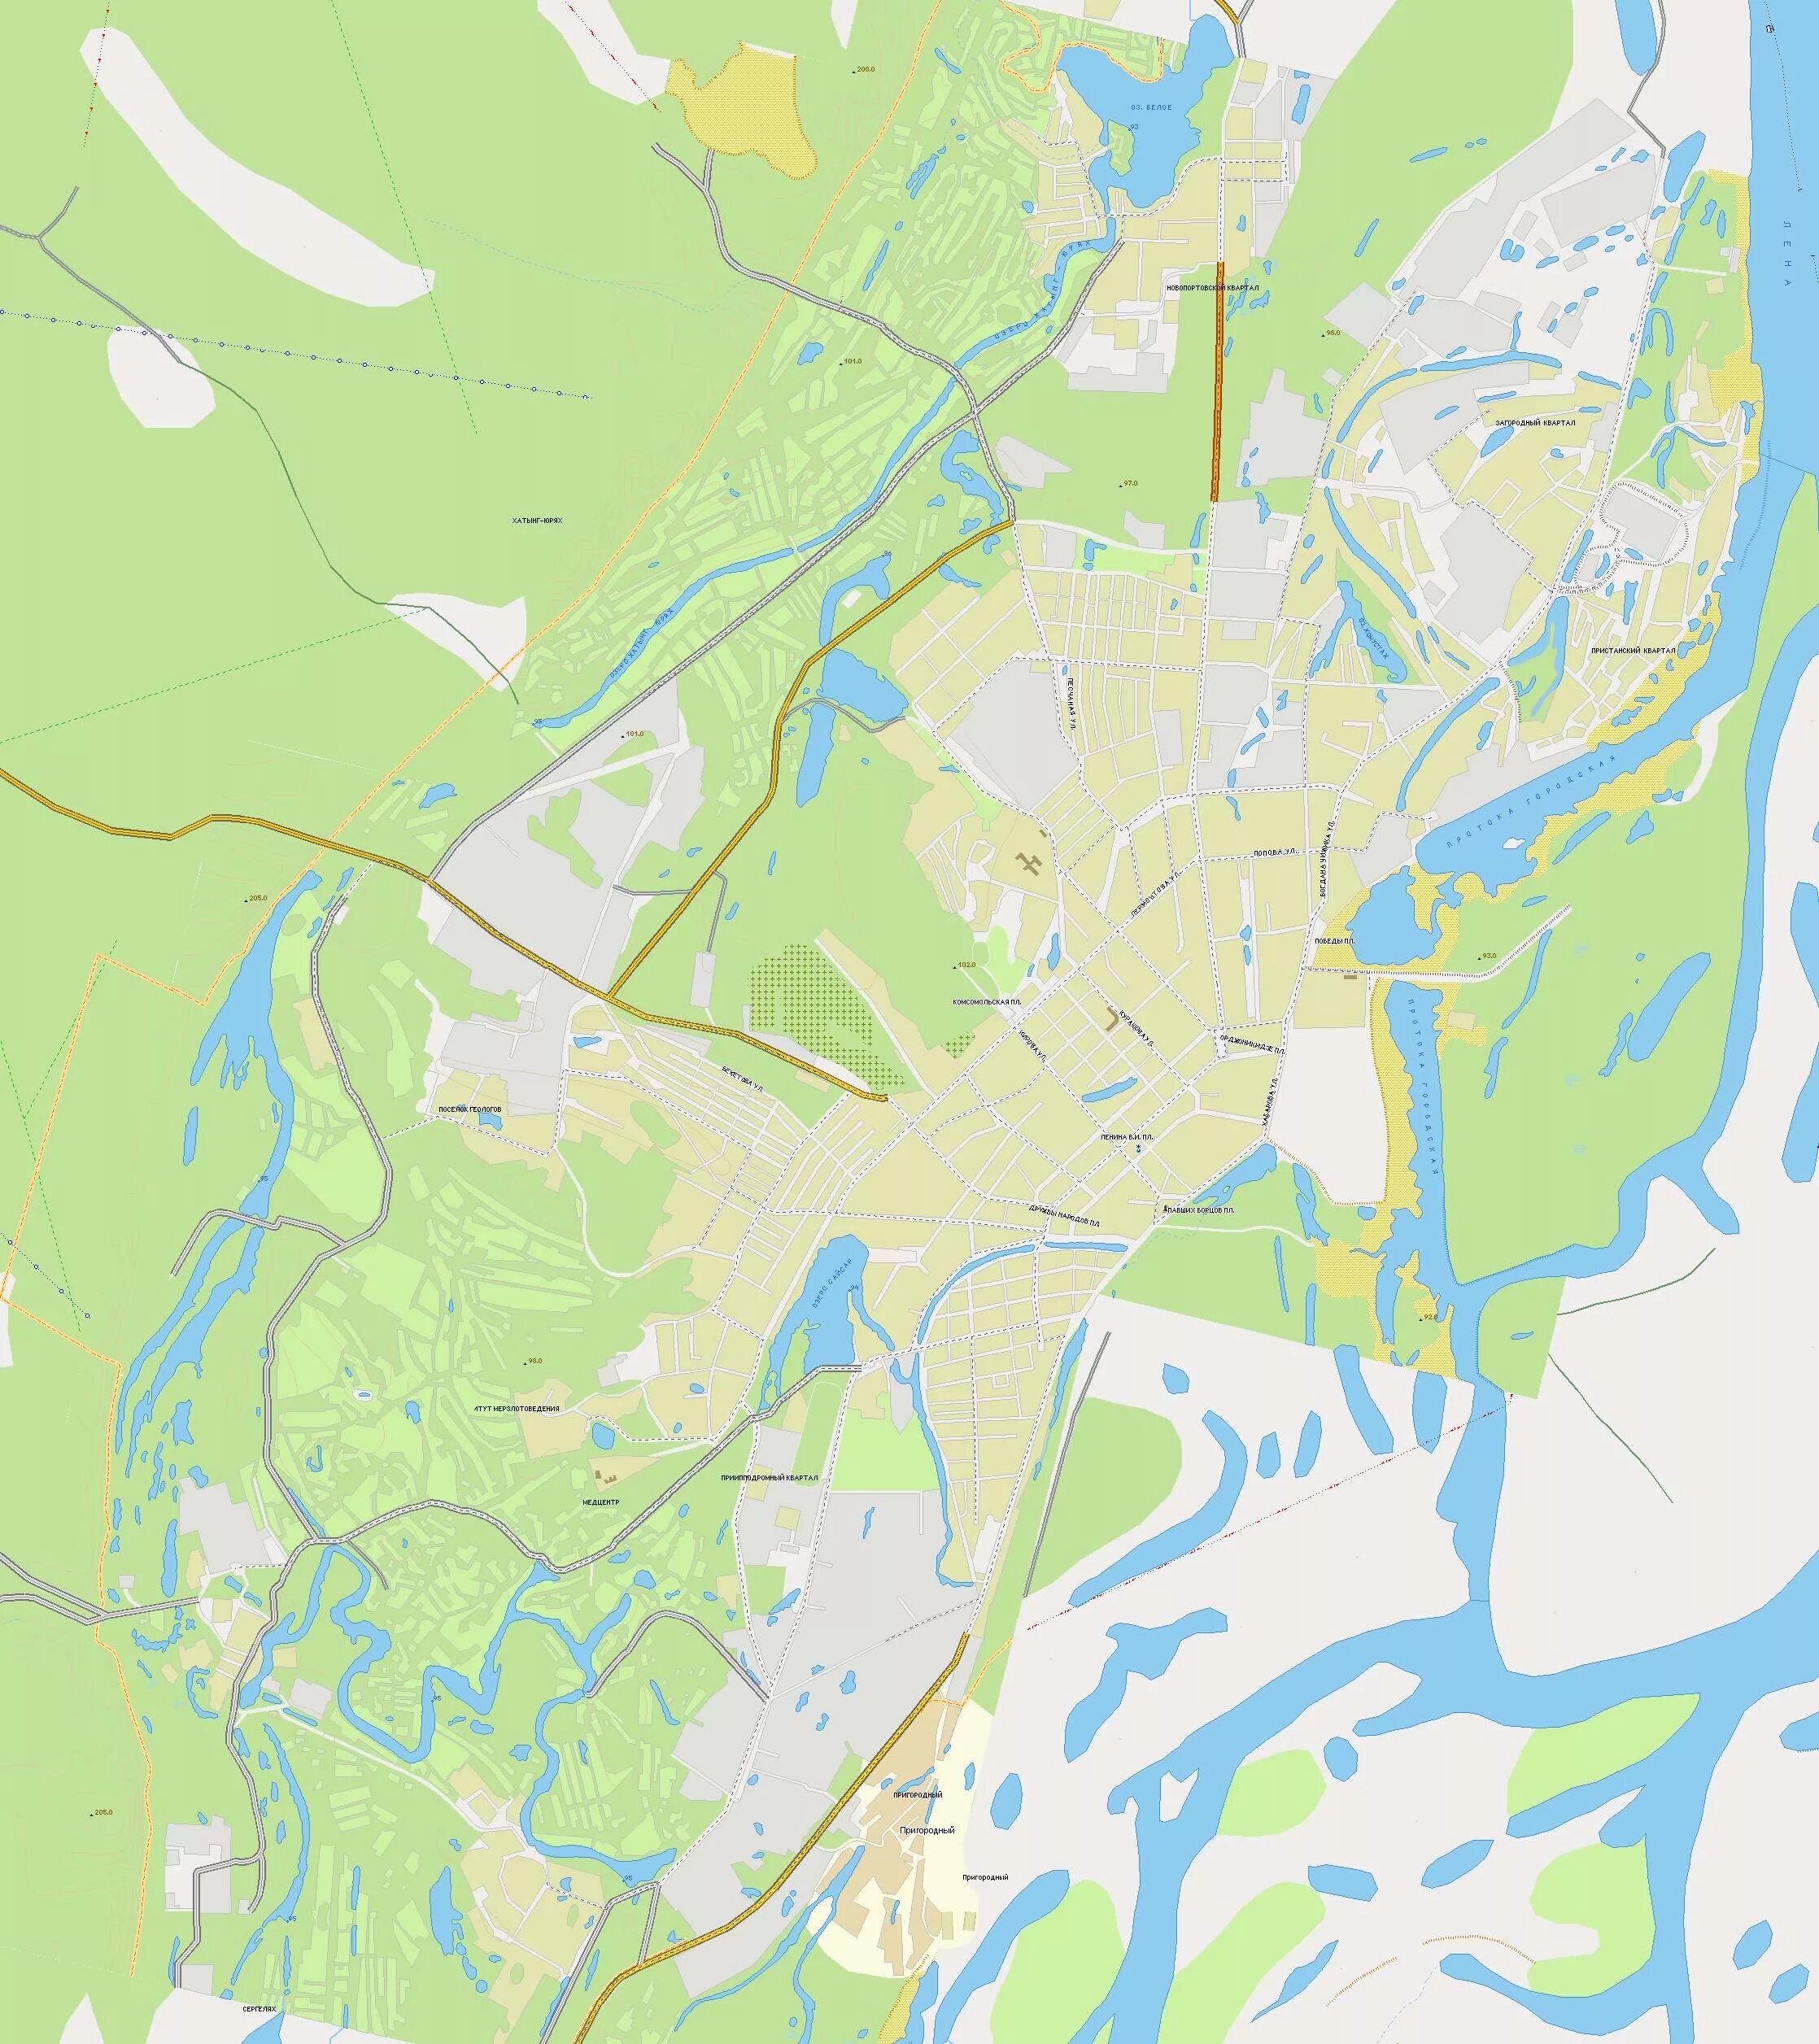 План города Якутска. Г Якутск на карте. Карта Якутск с масштабом. Подпишите на карте город якутск